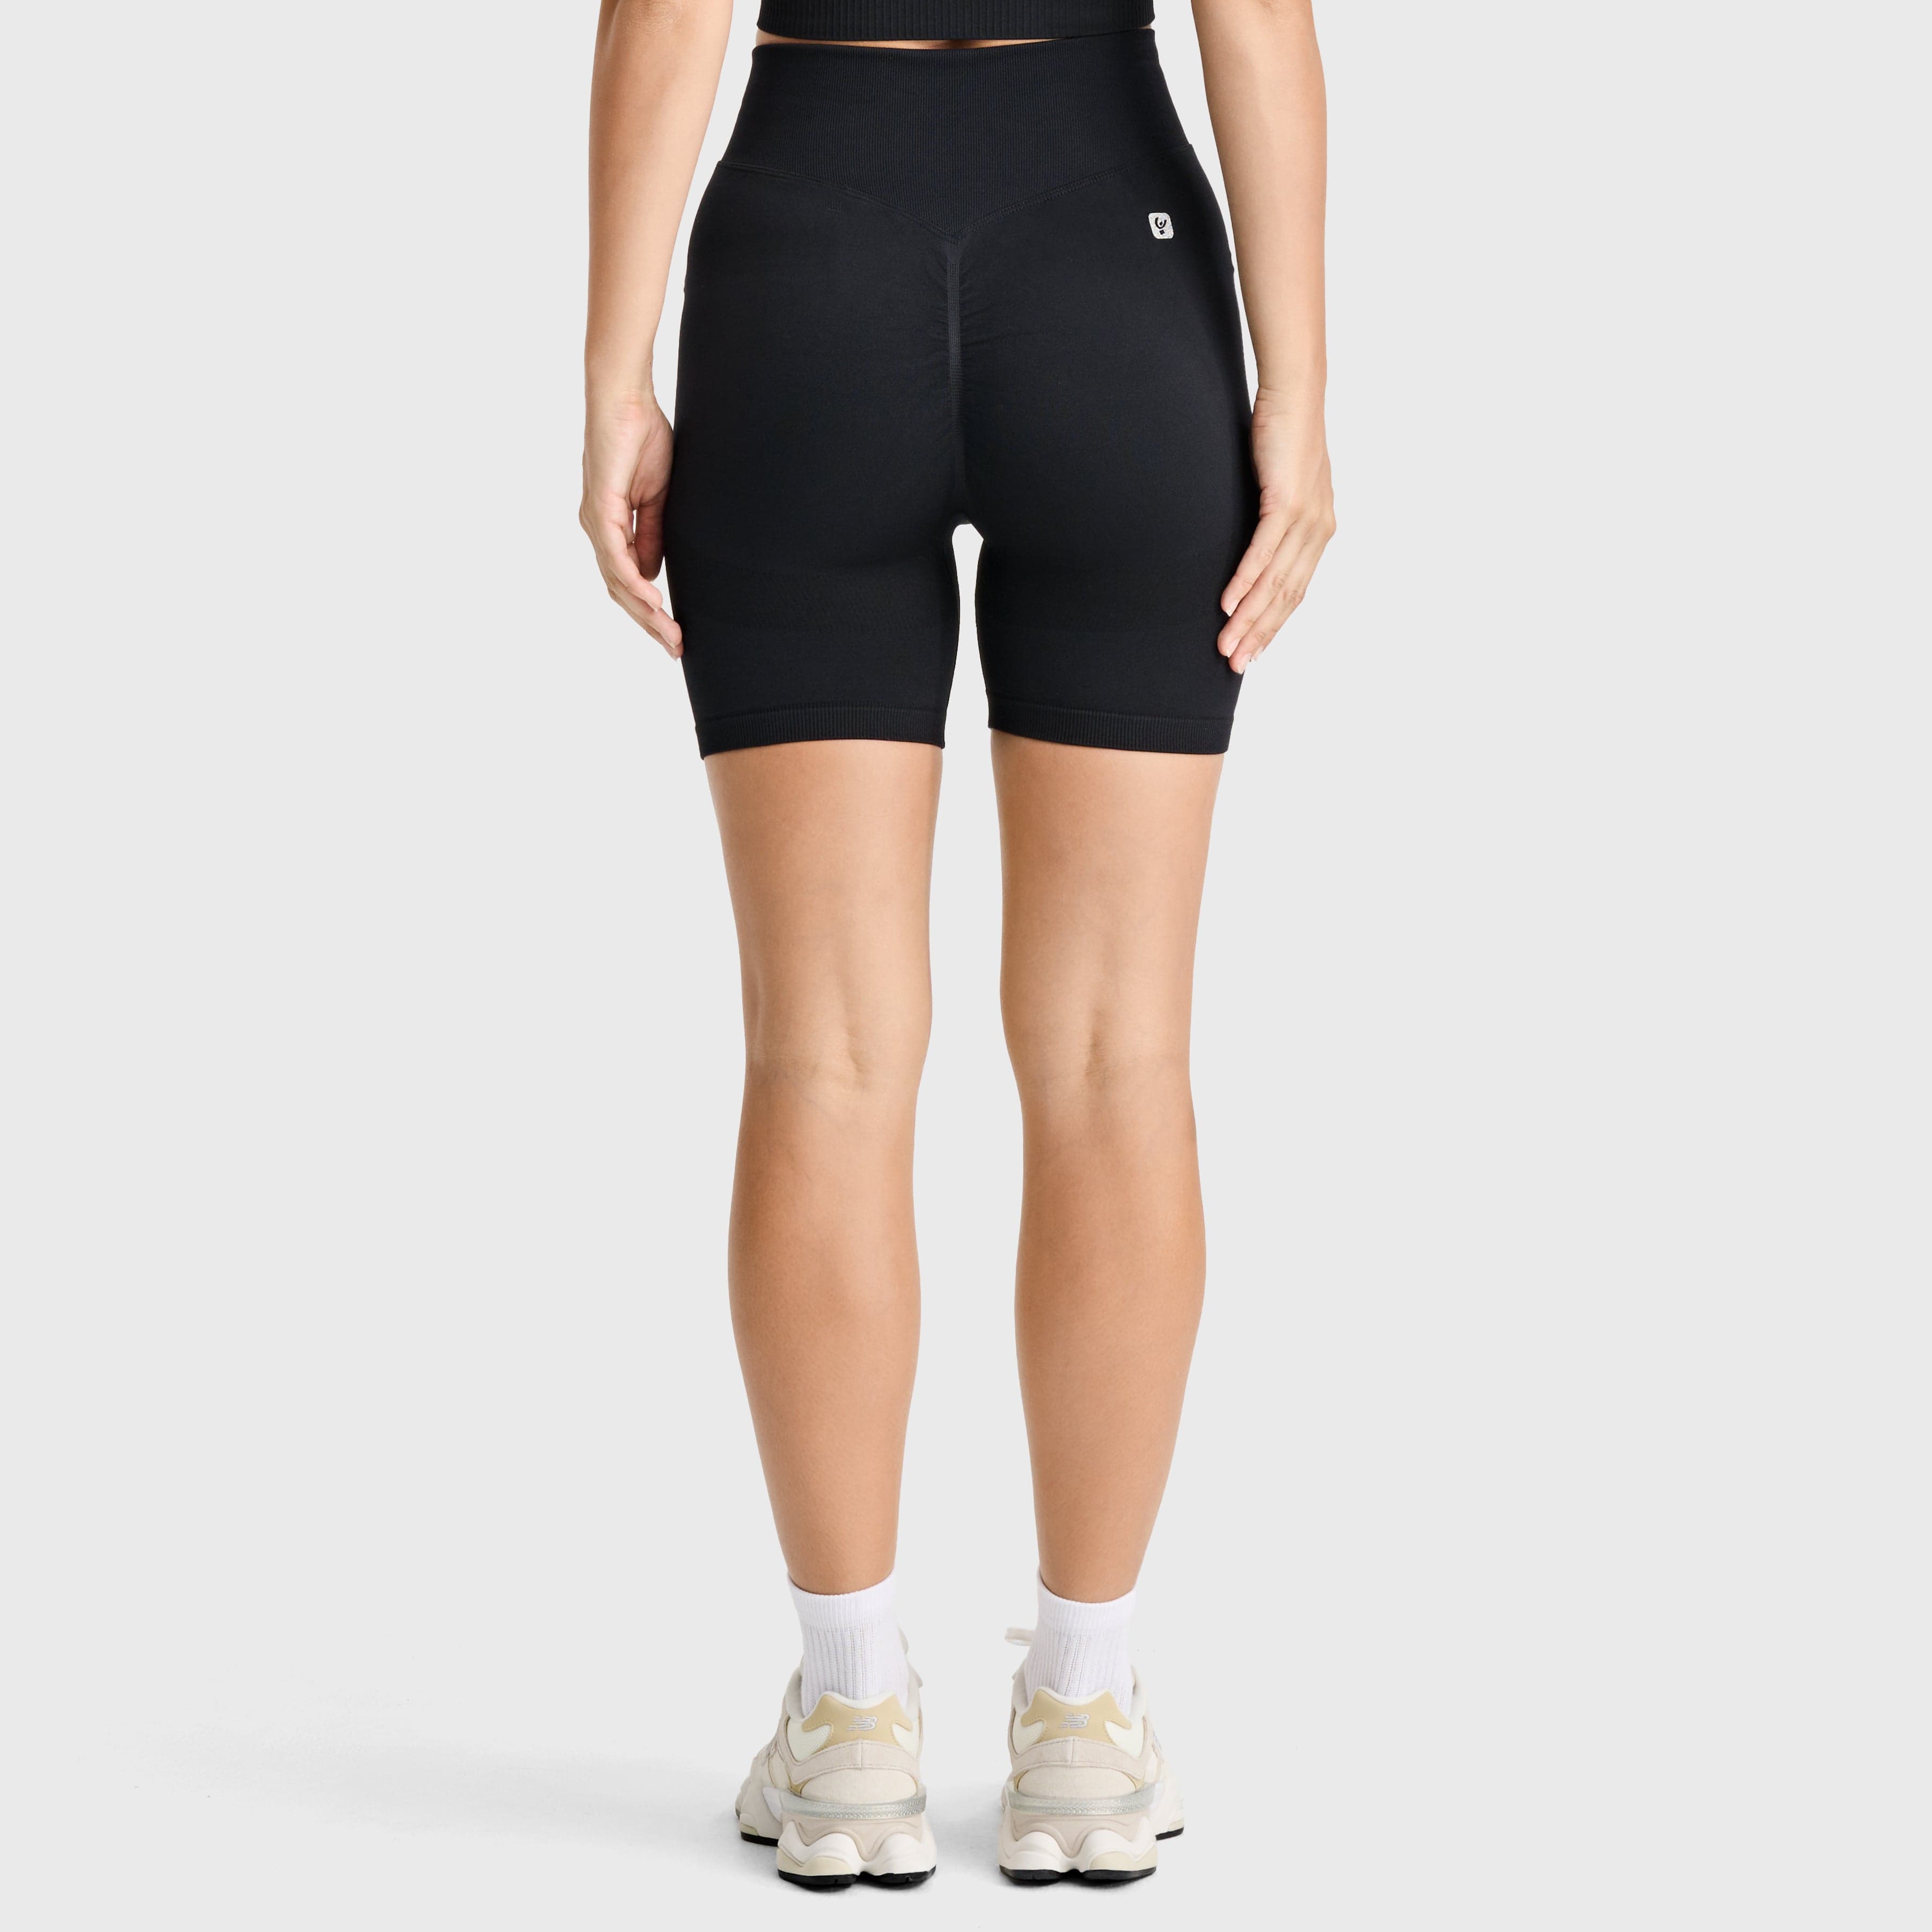 Seamless - High Waisted - Biker Shorts - Black 3